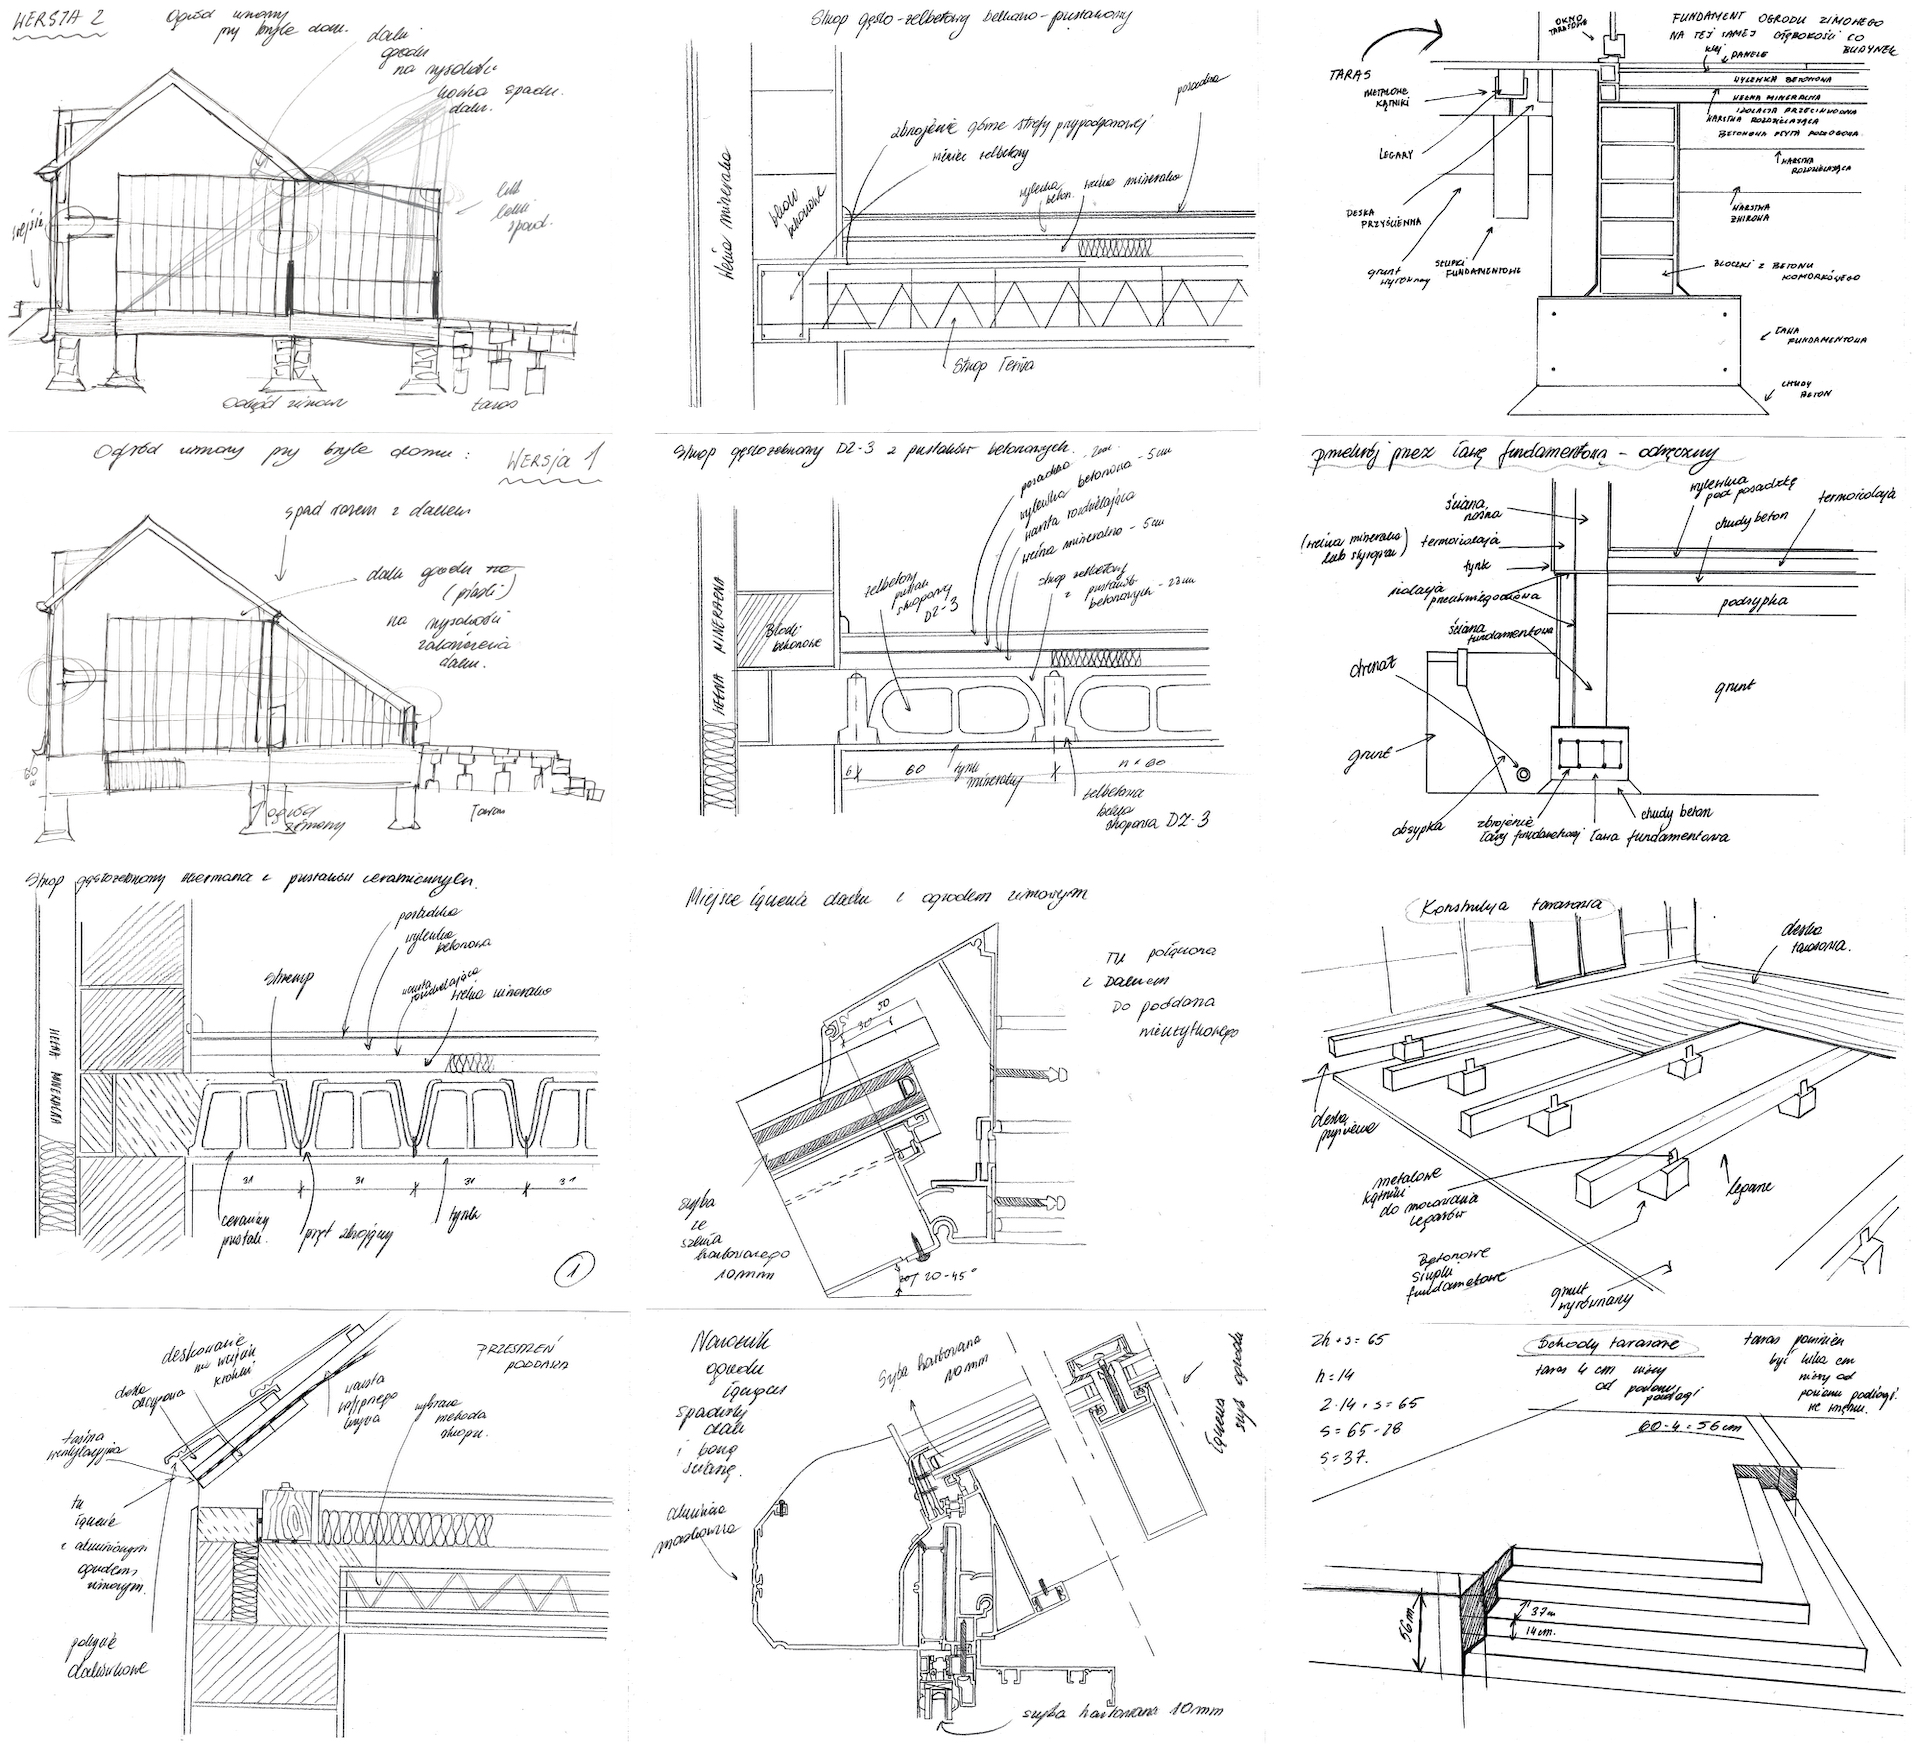 12. Plansza zawiera autorskie szkice komplementarne z dokumentacją techniczną, które obrazują strukturę ścian, stropu, dachu oraz posadowienie projektowanego budynku. 